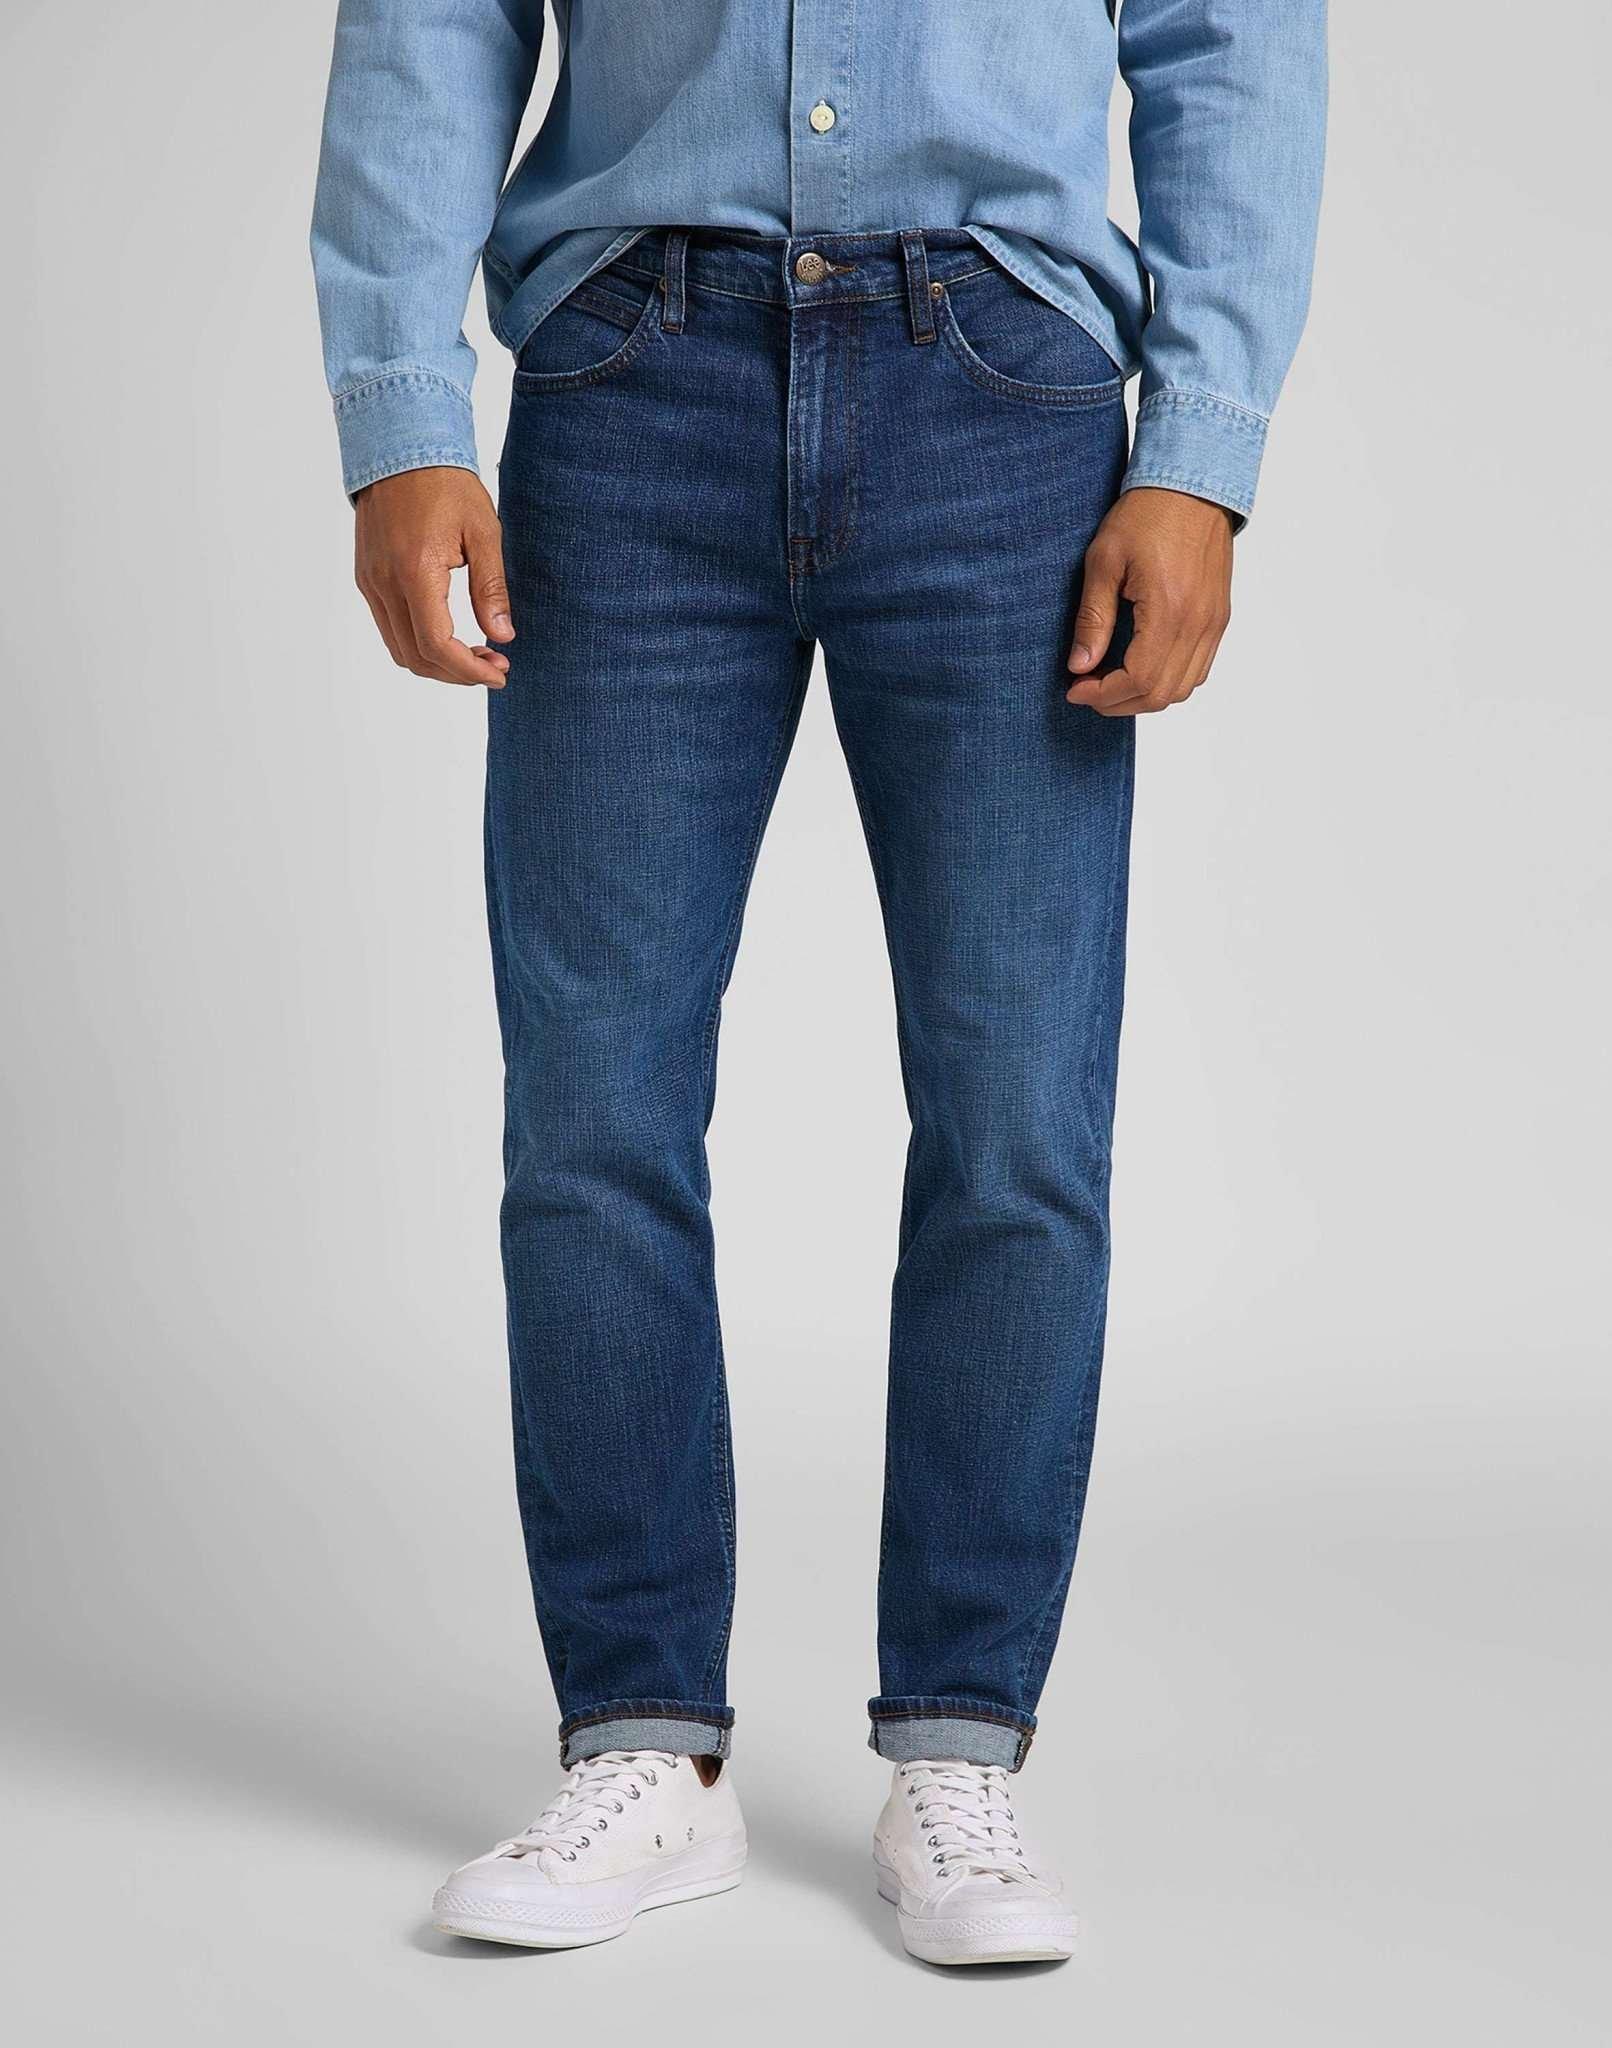 Jeans Straight Leg Austin Herren Blau Denim L32/W40 von Lee